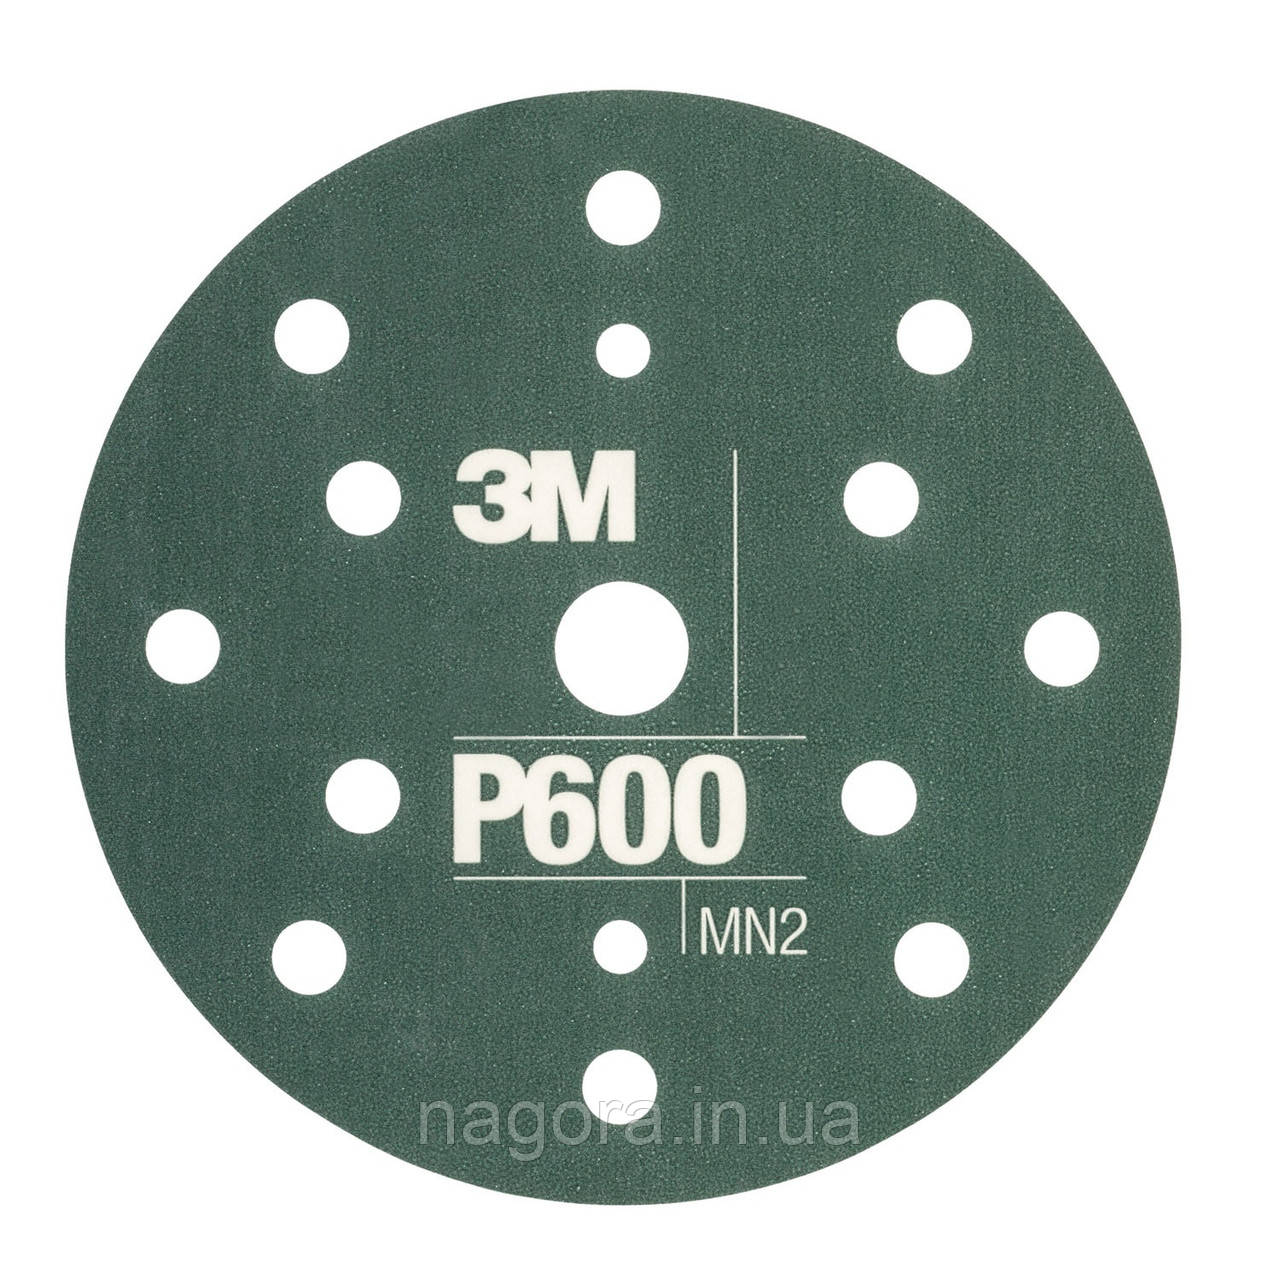 Гнучкі абразивні диски 3M™ Hookit™ CROW, d150 мм, 15 отв. P600